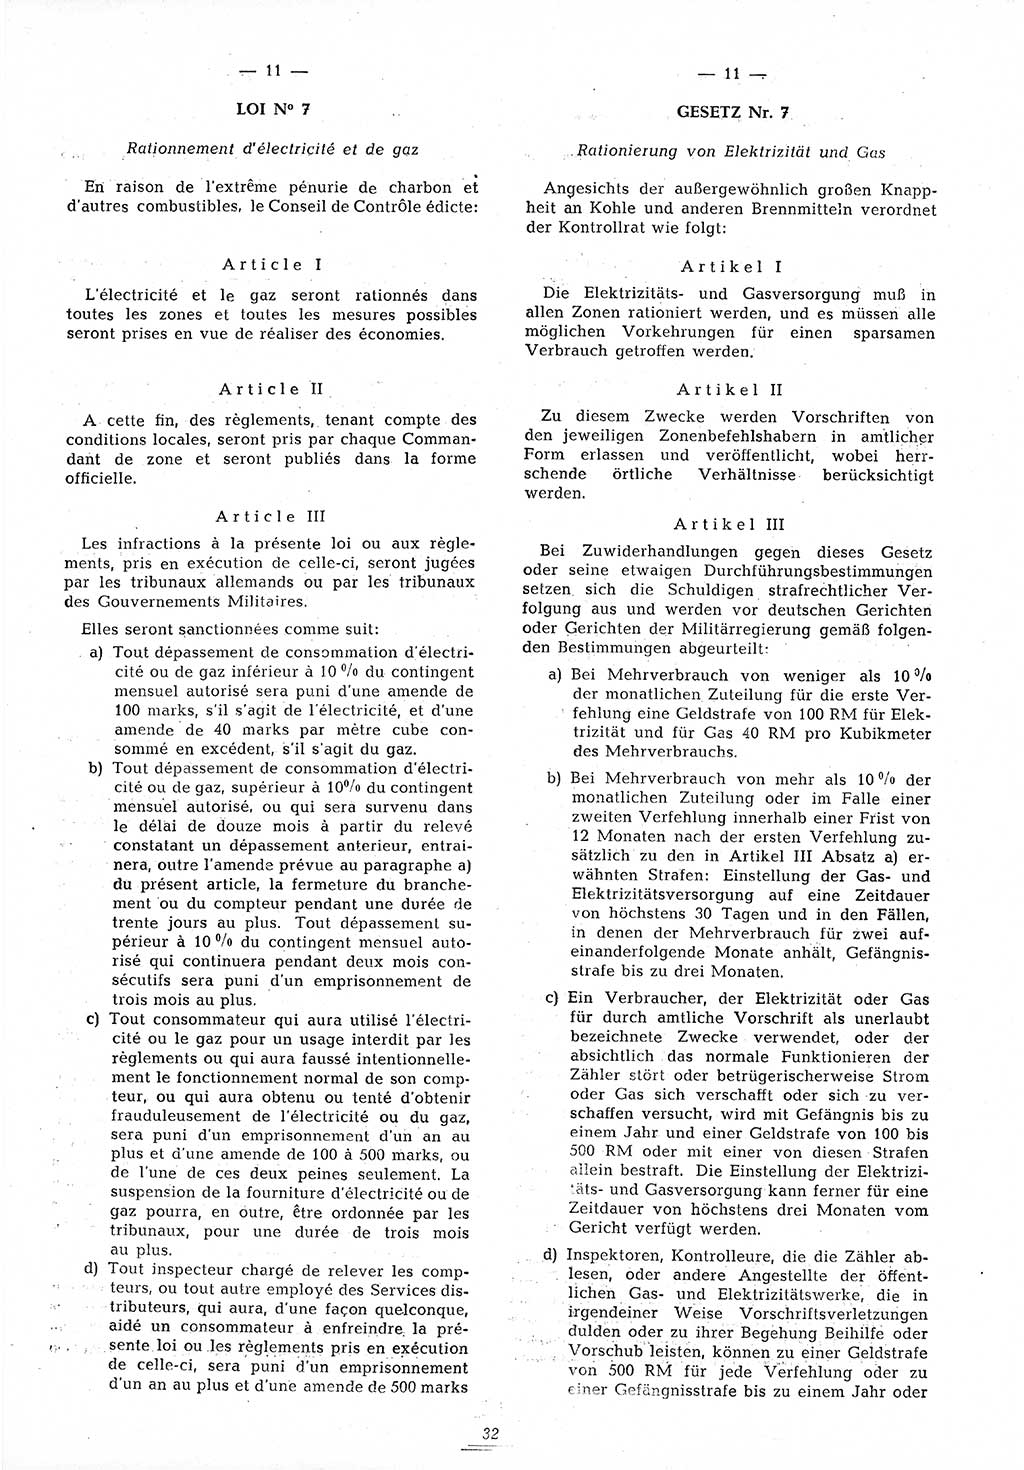 Amtsblatt des Kontrollrats (ABlKR) in Deutschland 1945, Seite 32/2 (ABlKR Dtl. 1945, S. 32/2)